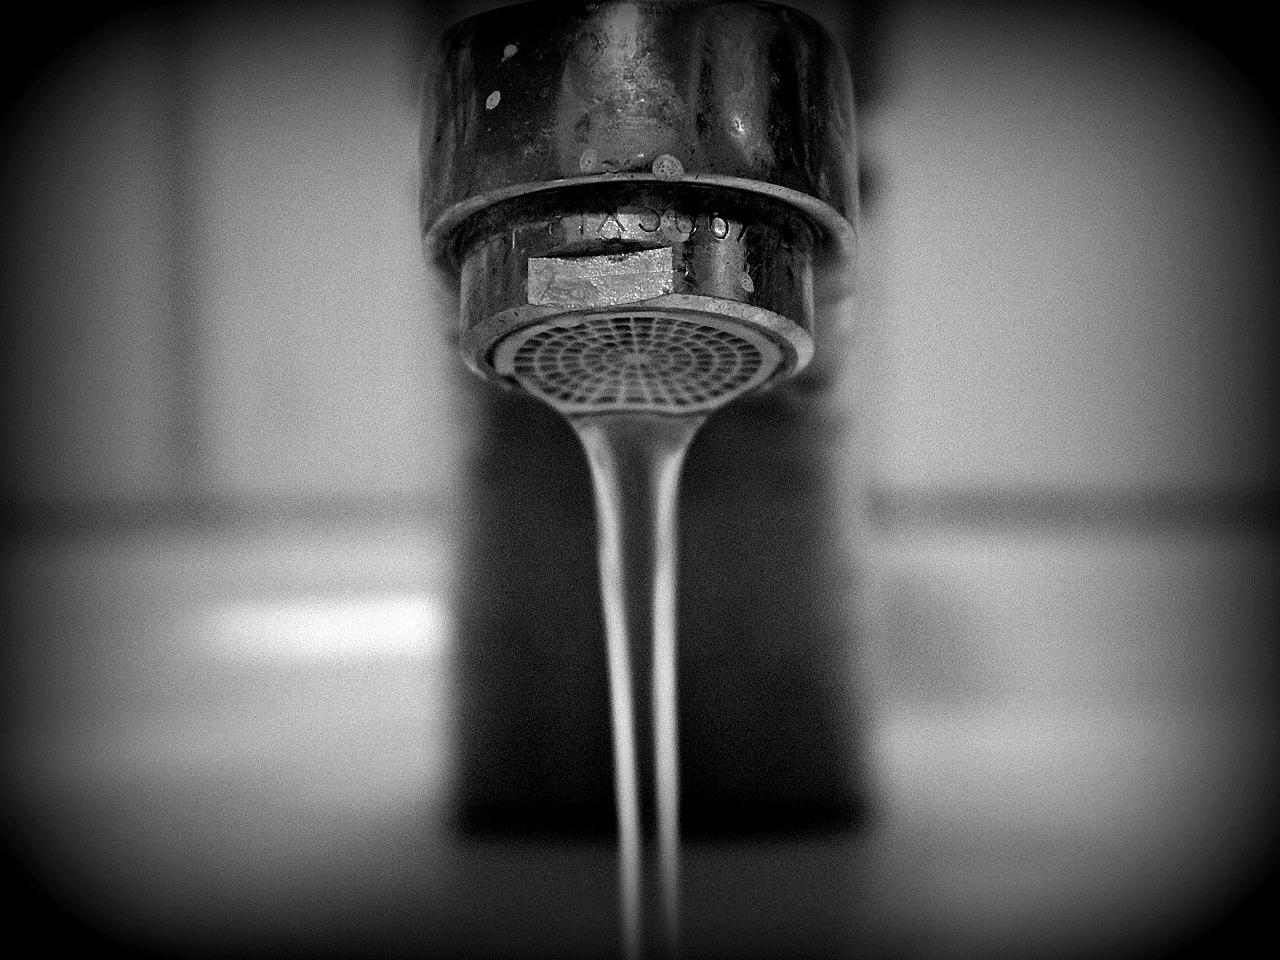 Pénurie d’eau: faut-il augmenter le prix pour limiter la demande?